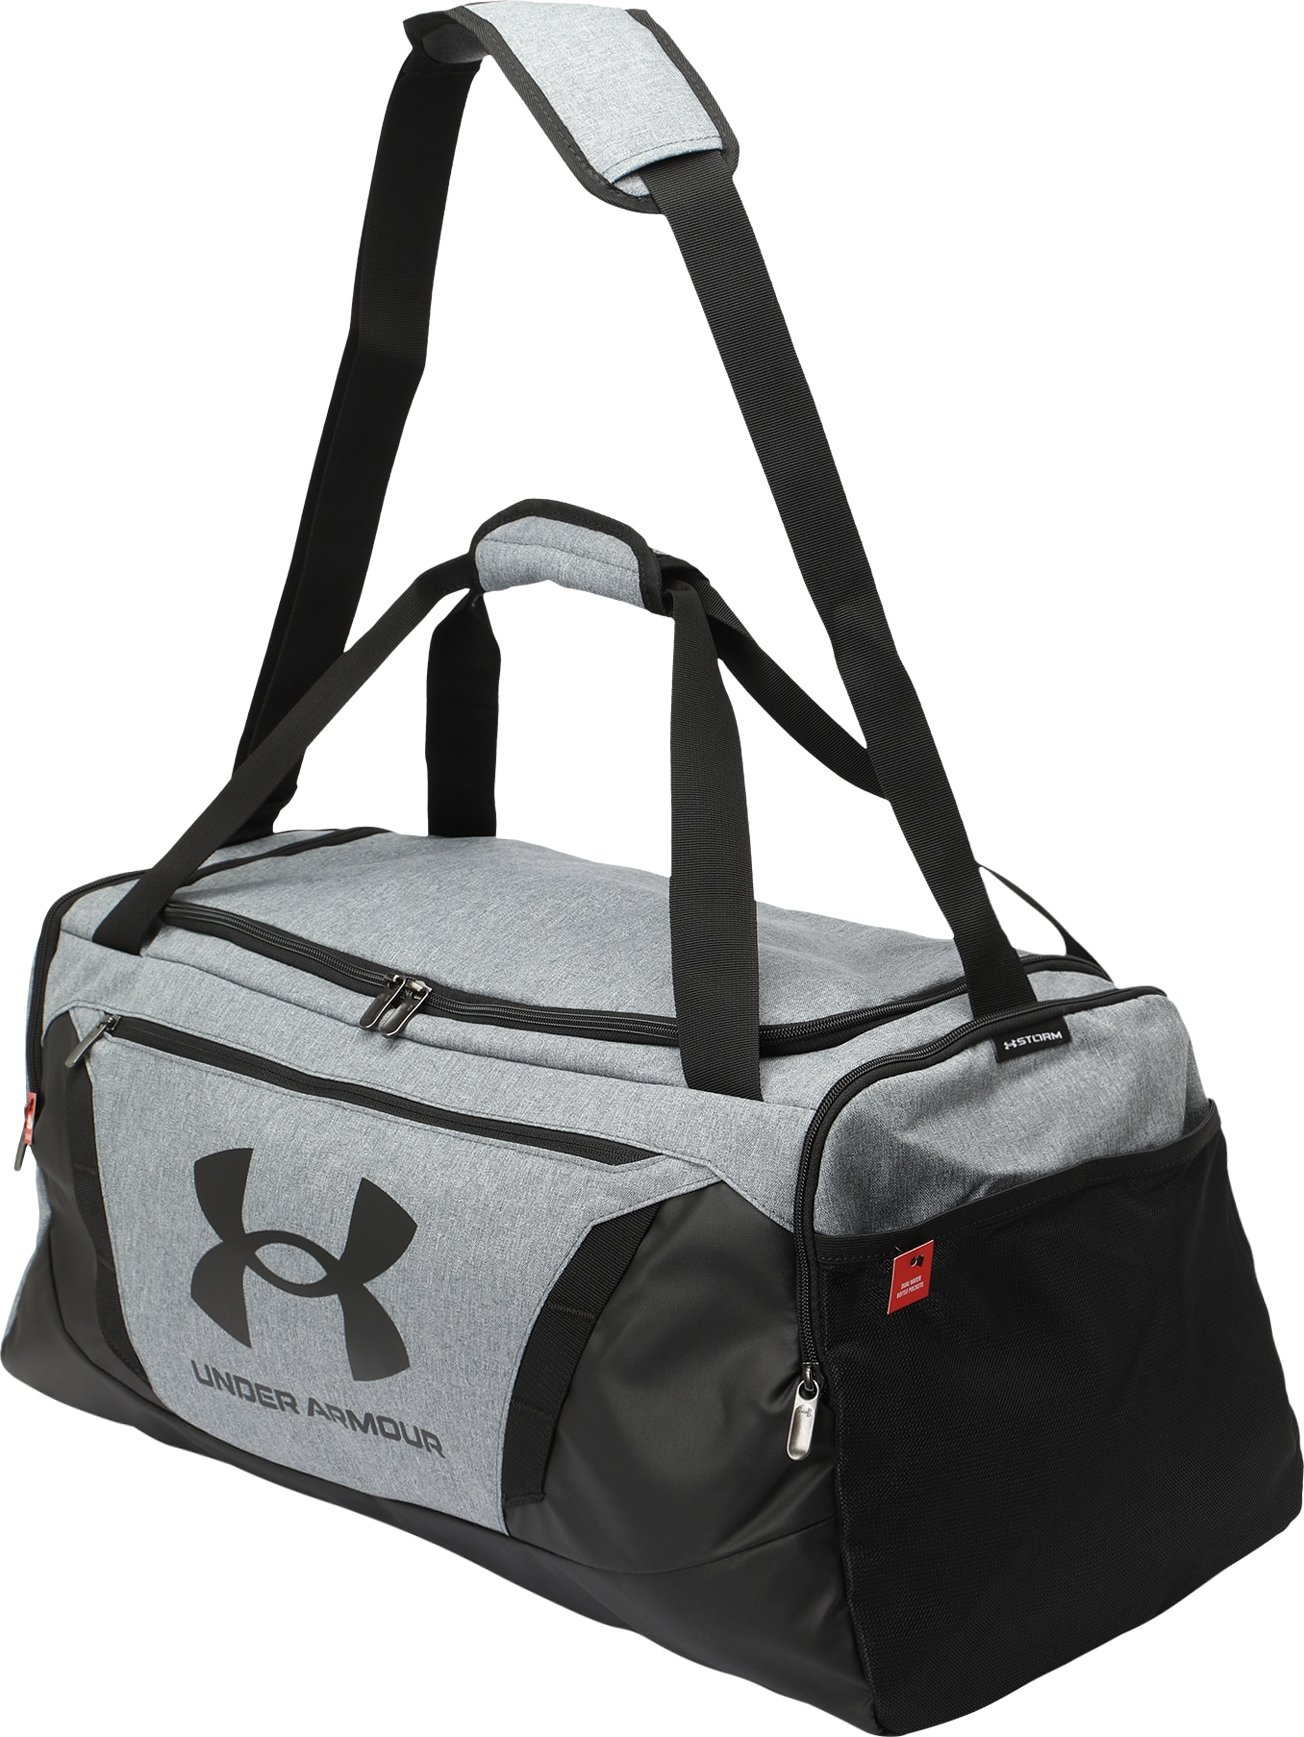 UNDER ARMOUR Sportovní taška 'Undeniable 5.0' černá / šedý melír